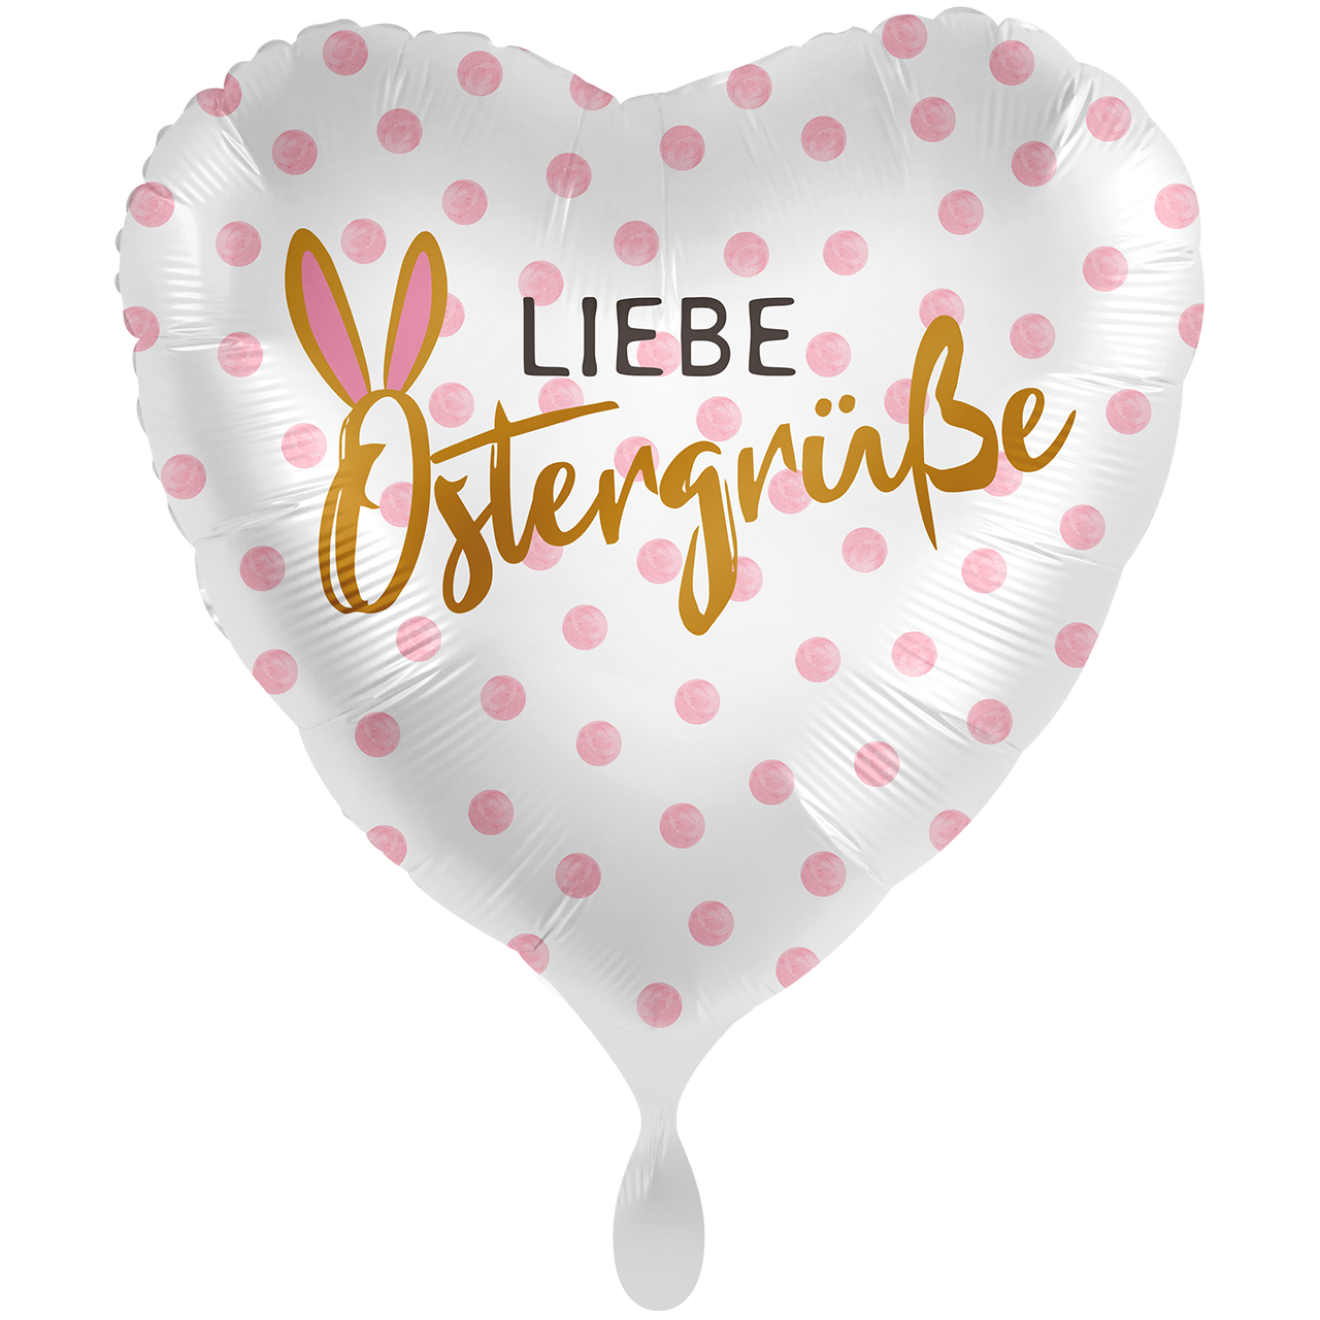 1 Balloon XXL - Liebe Ostergrüße - GER